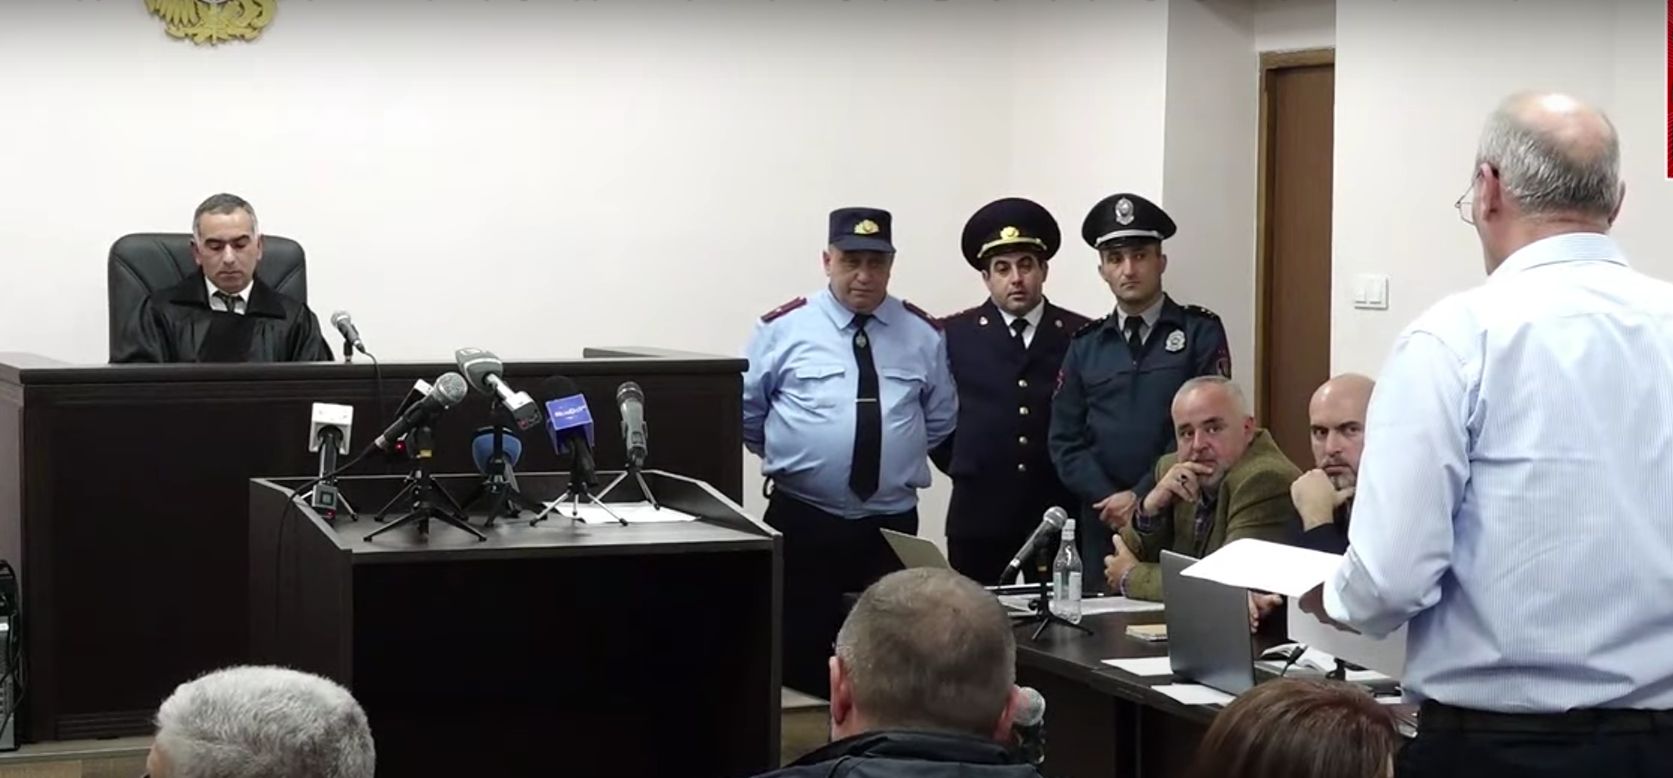 Մարթա Սիմոնյանին 4 ամիս կալանքի տակ են պահել, որ Աշոտյանի դեմ ցուցմունք տա. փաստաբան (տեսանյութ)